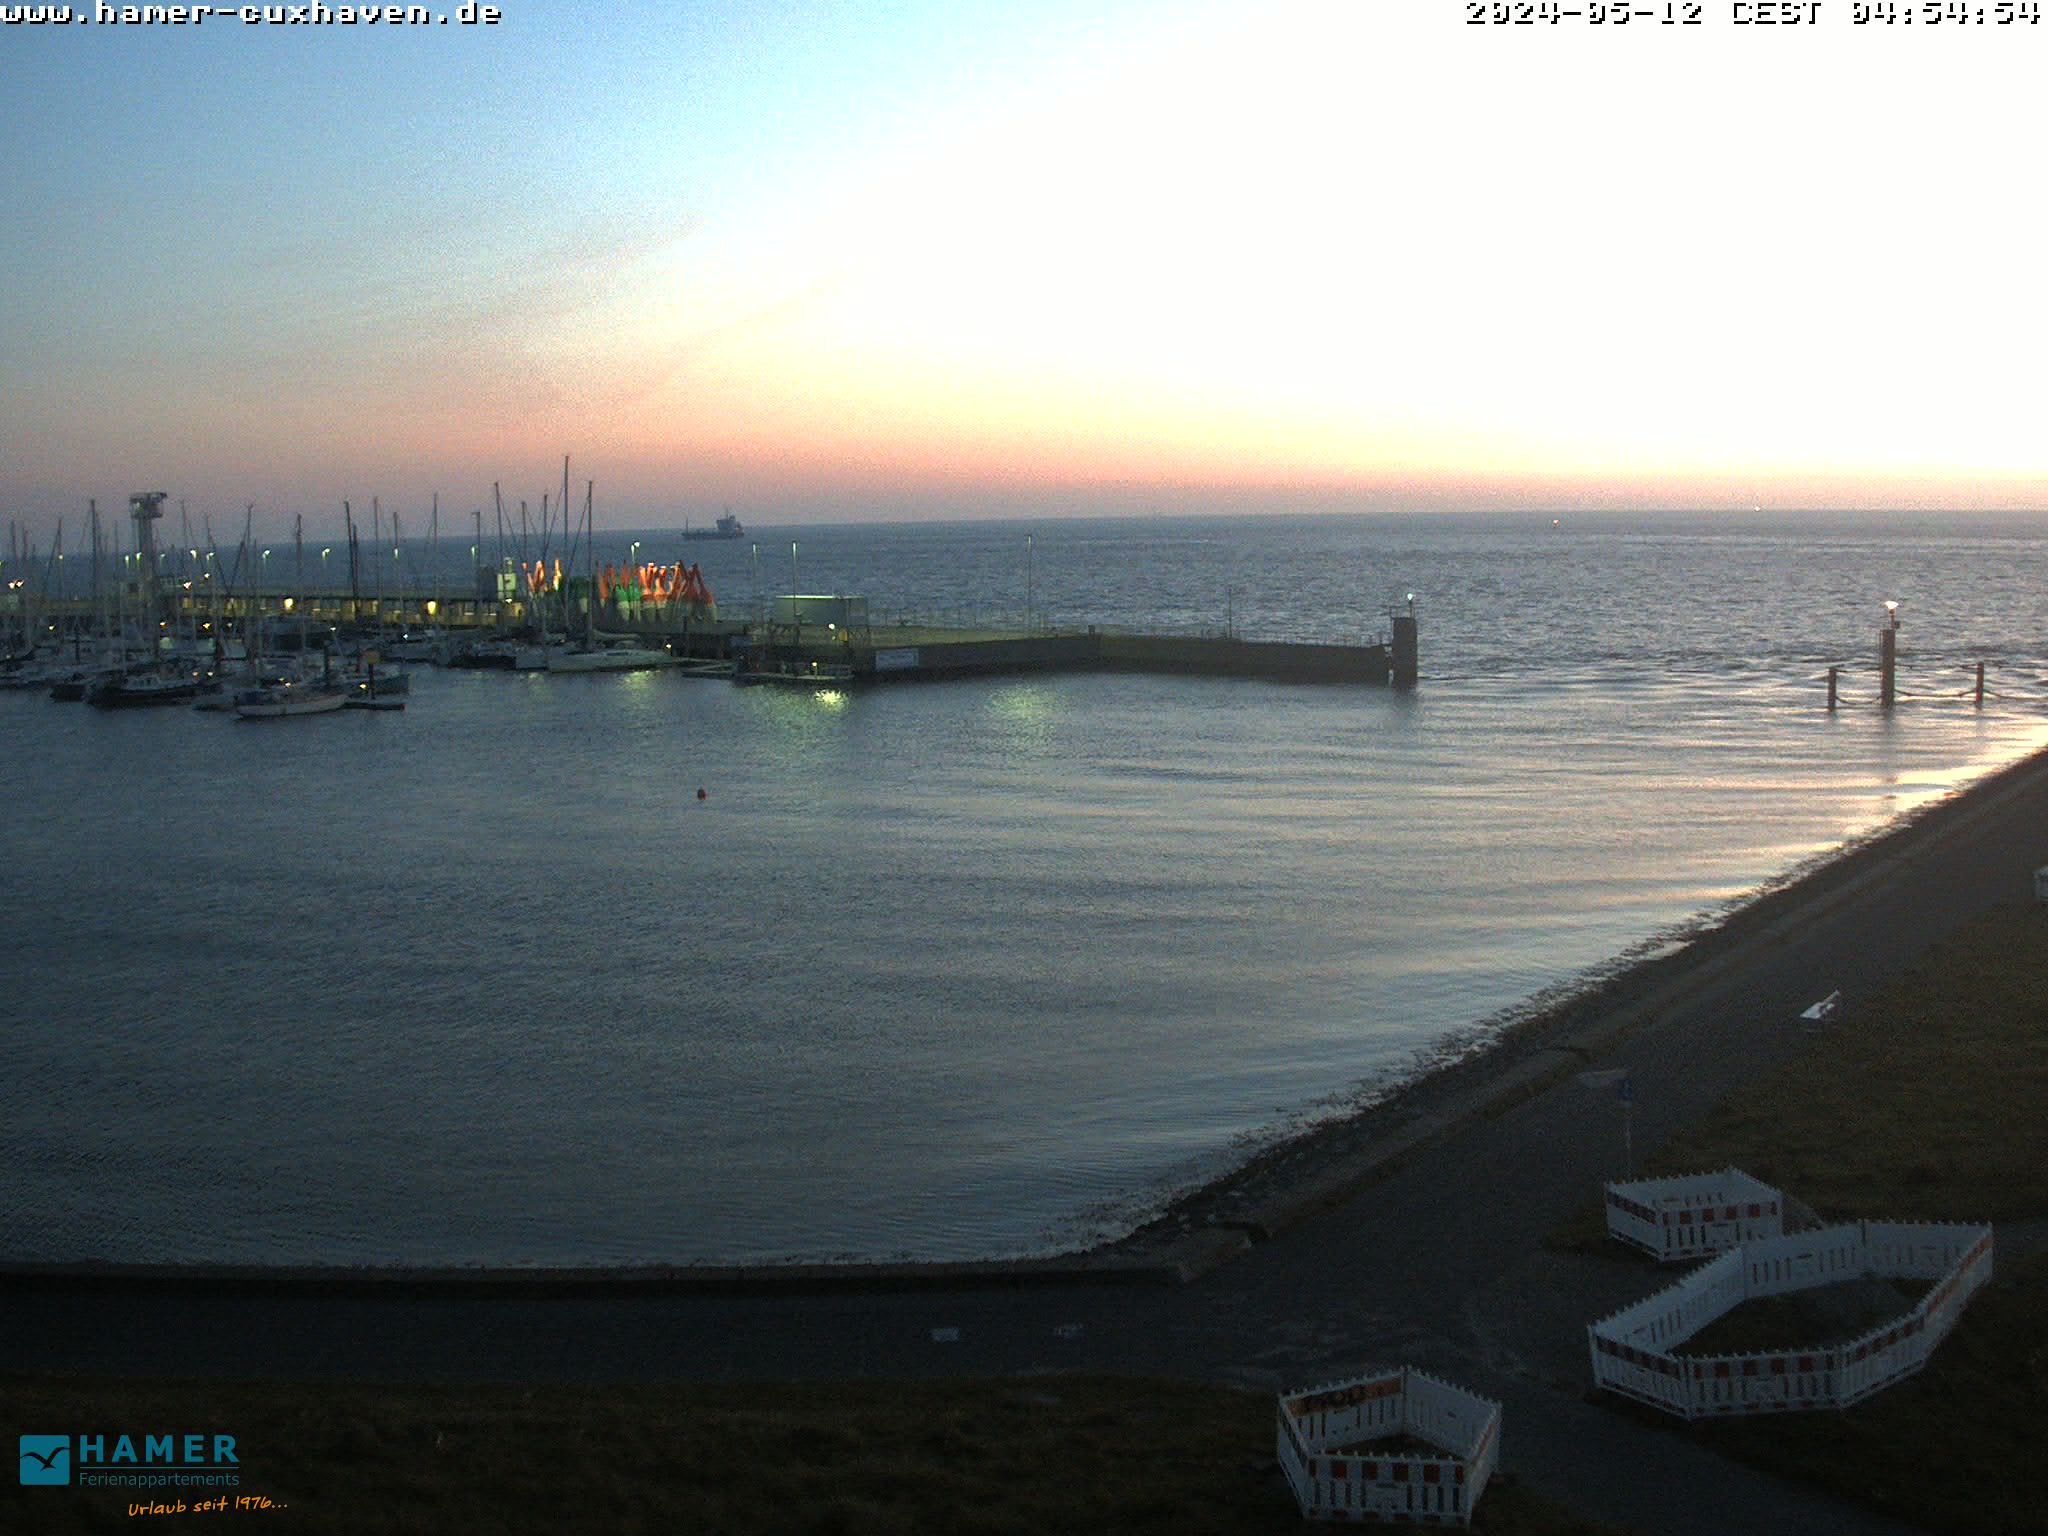 Cuxhaven Je. 04:55